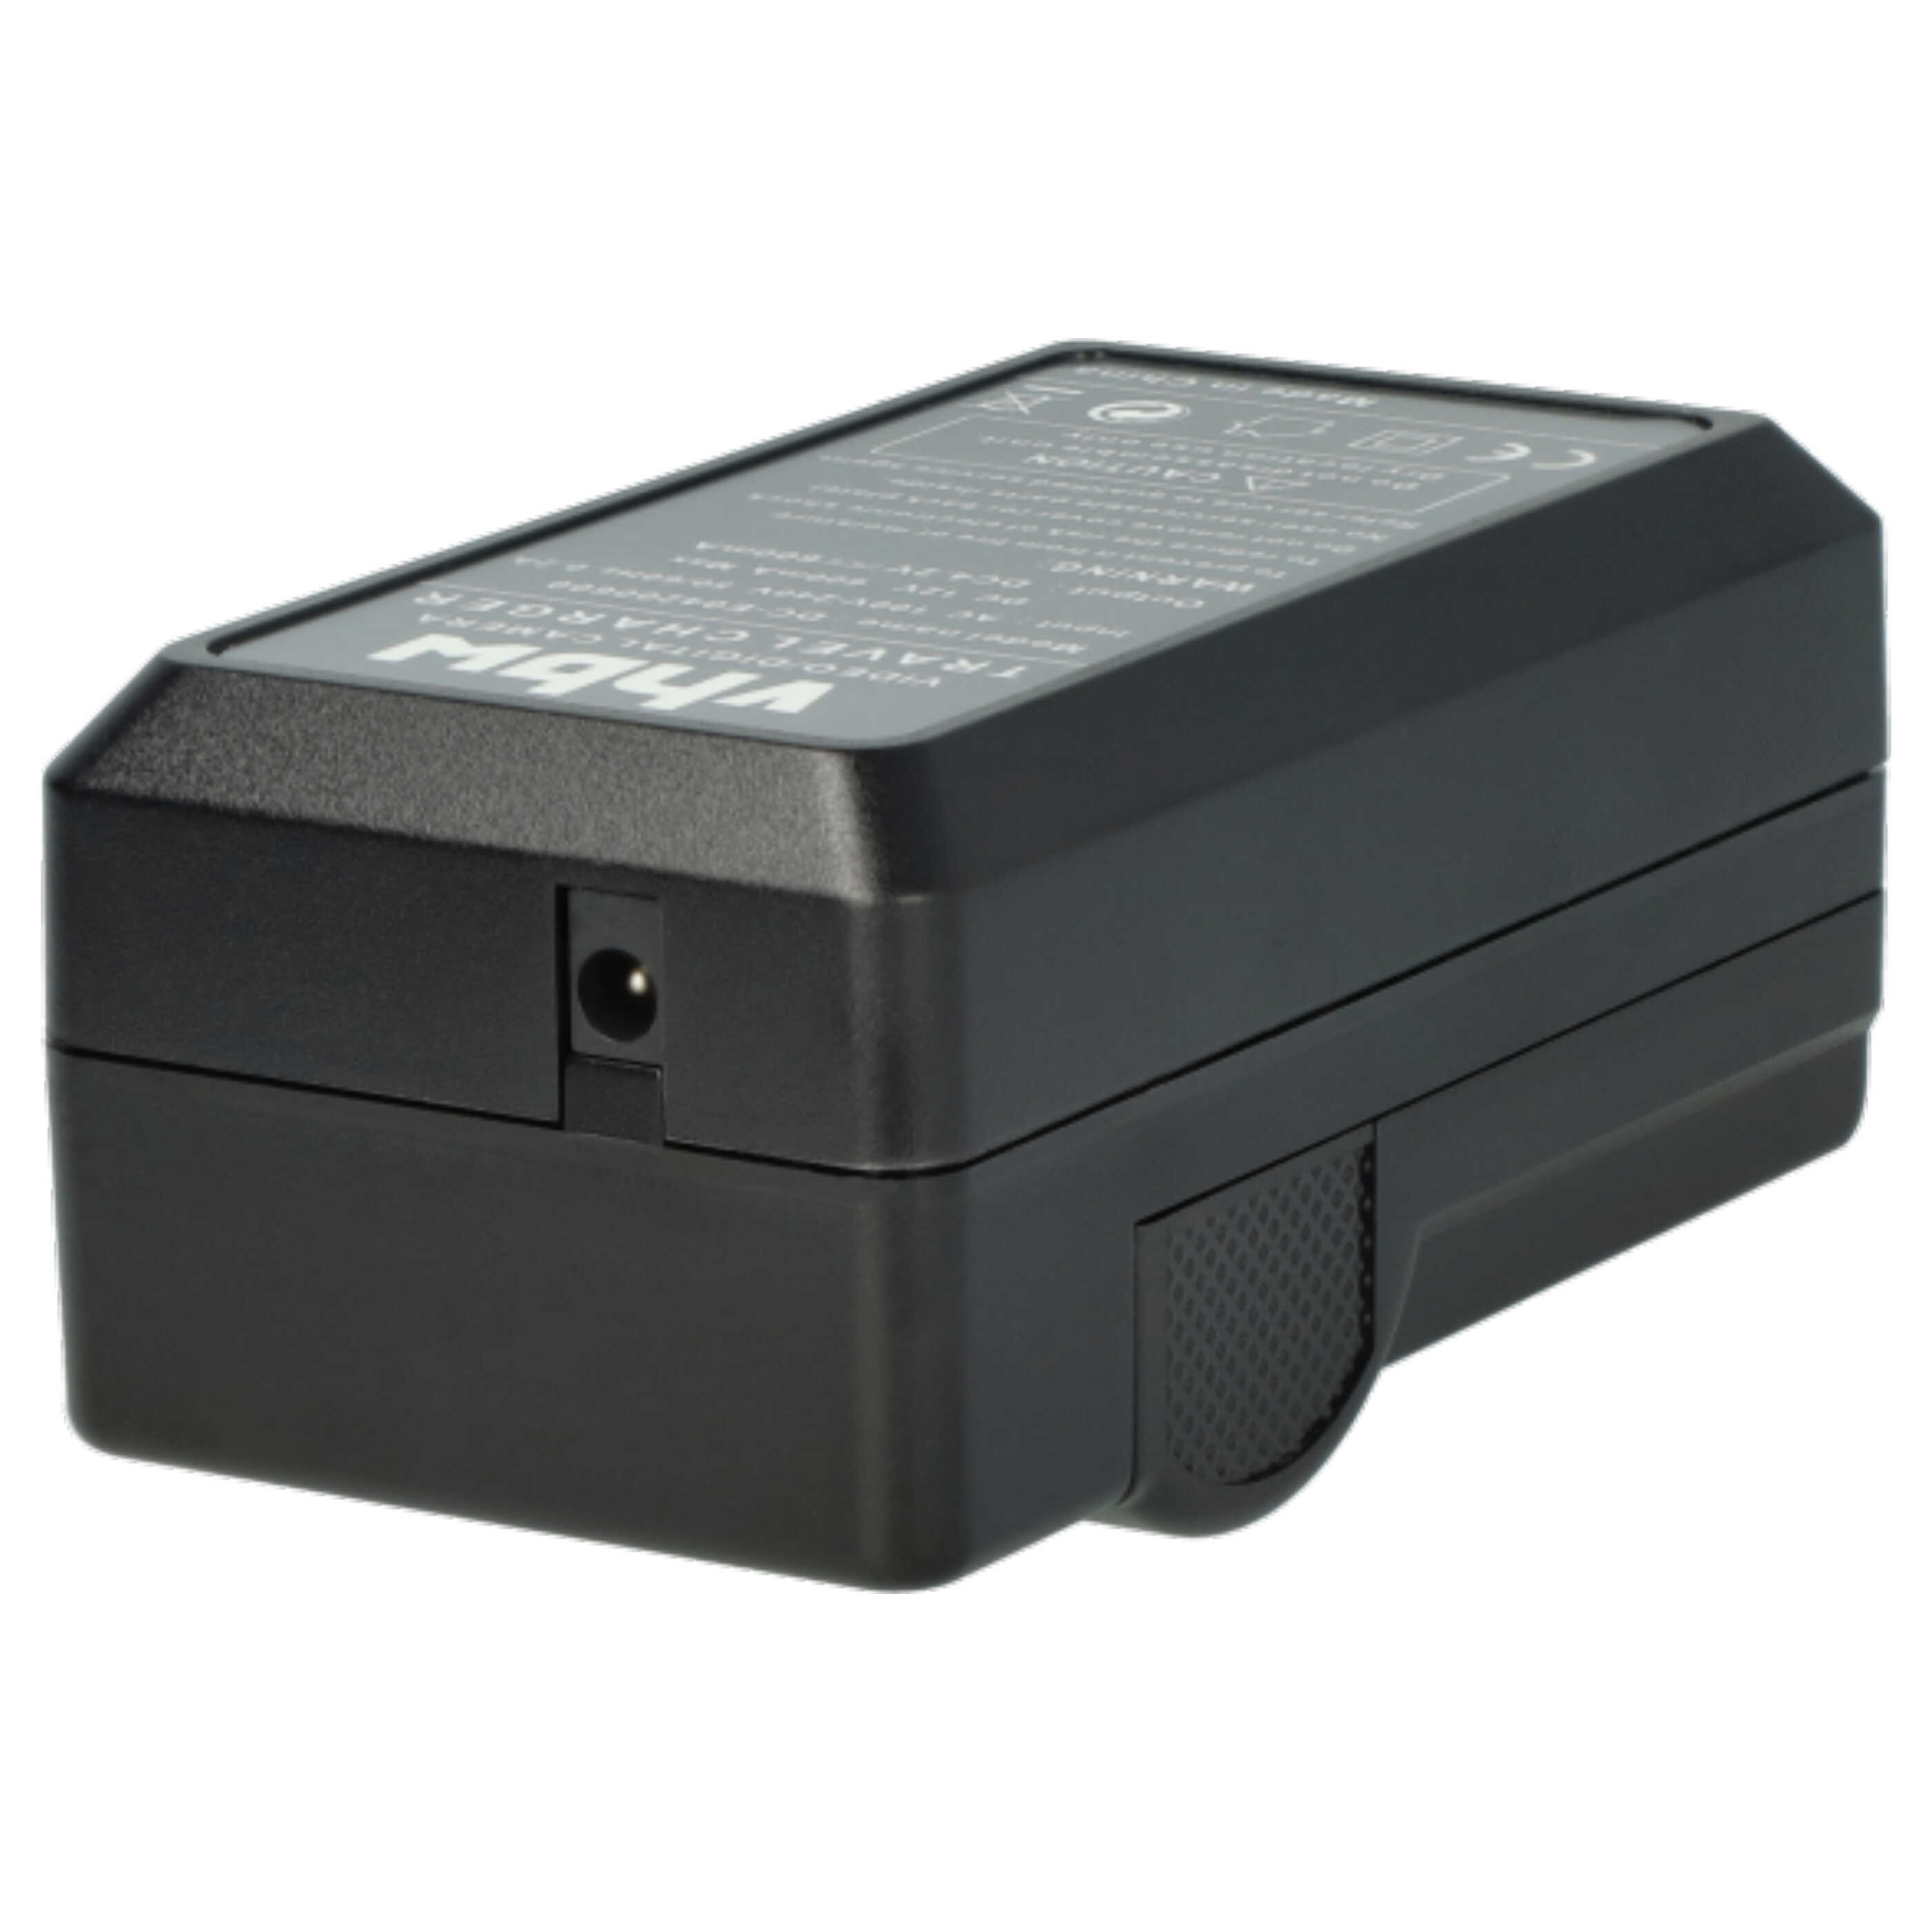 Akku Ladegerät passend für Optio LS465 Kamera u.a. - 0,6 A, 4,2 V